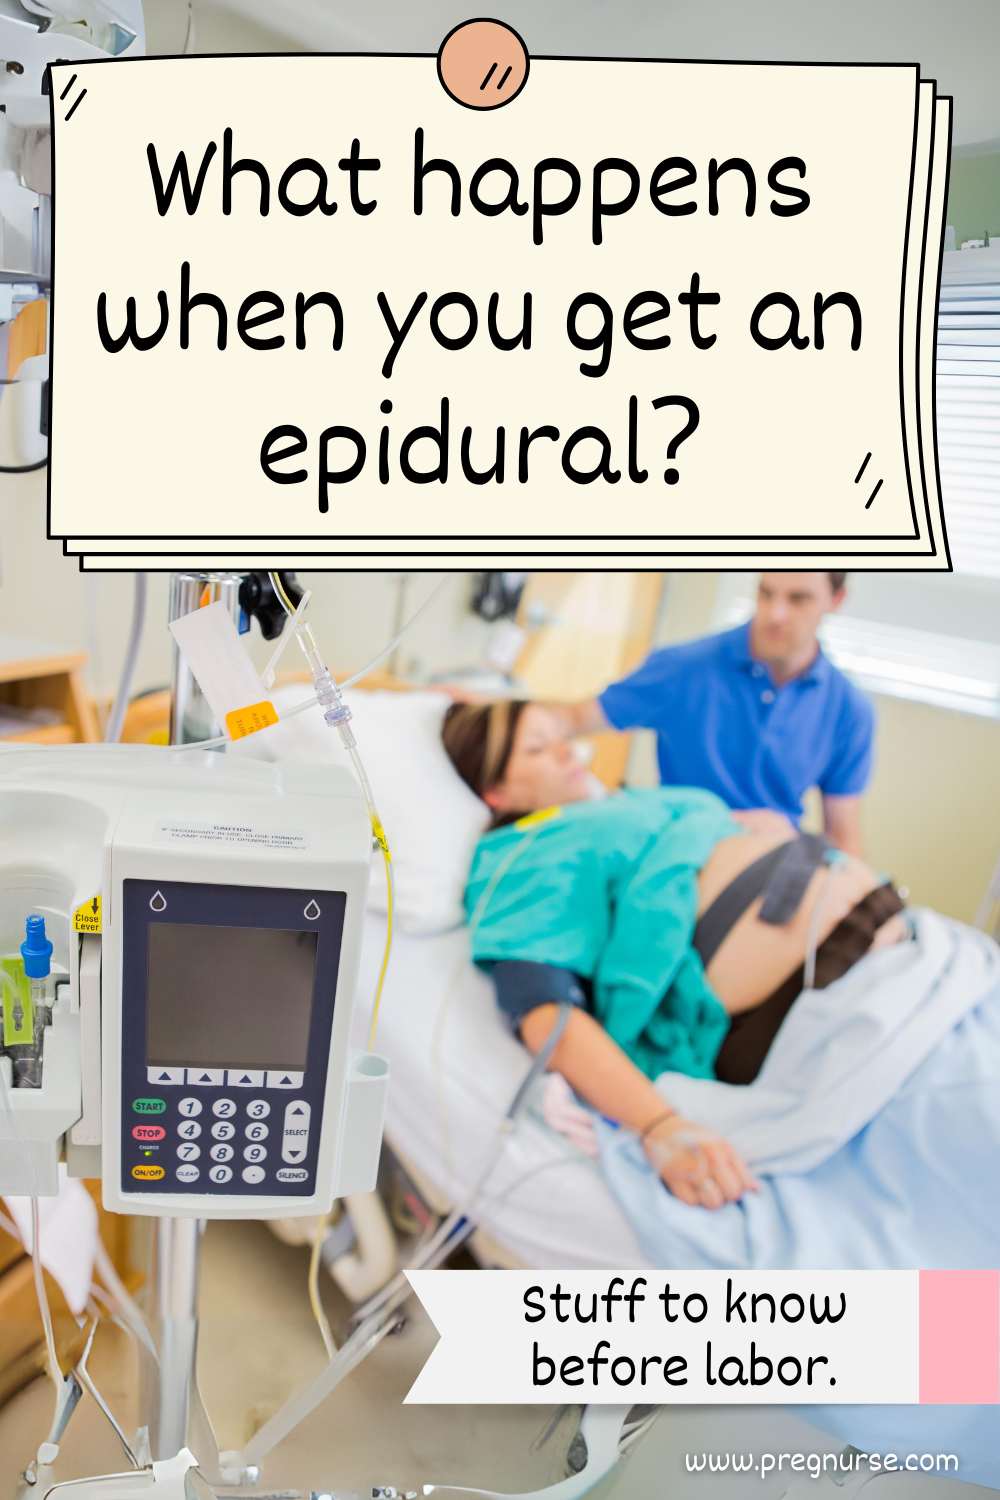 prepare to get your epidural!